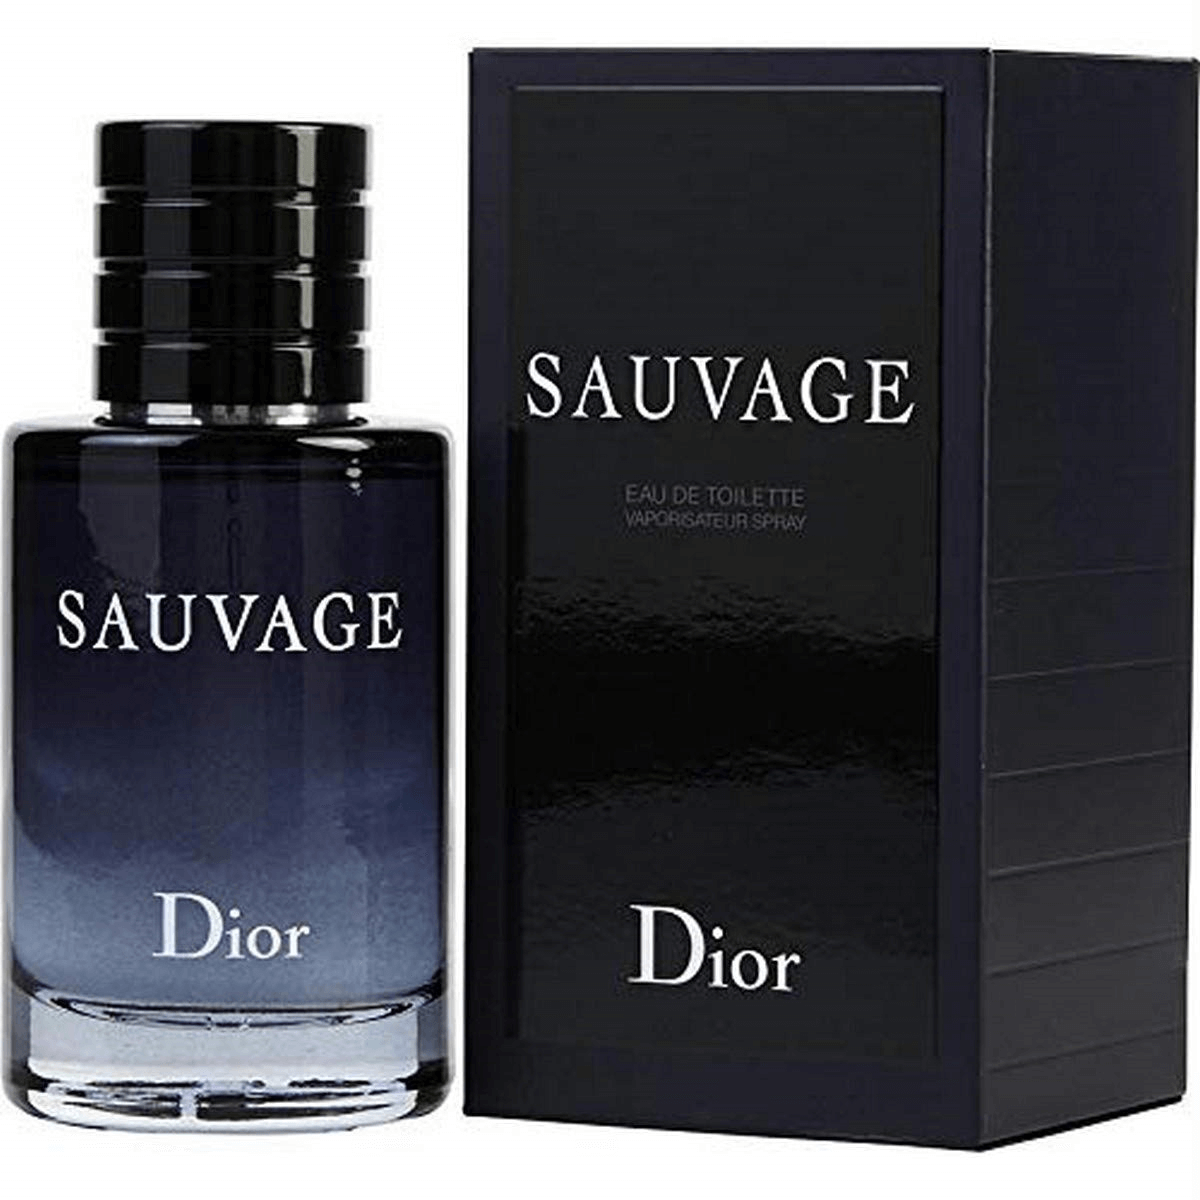 Top 10 Perfumes For Men